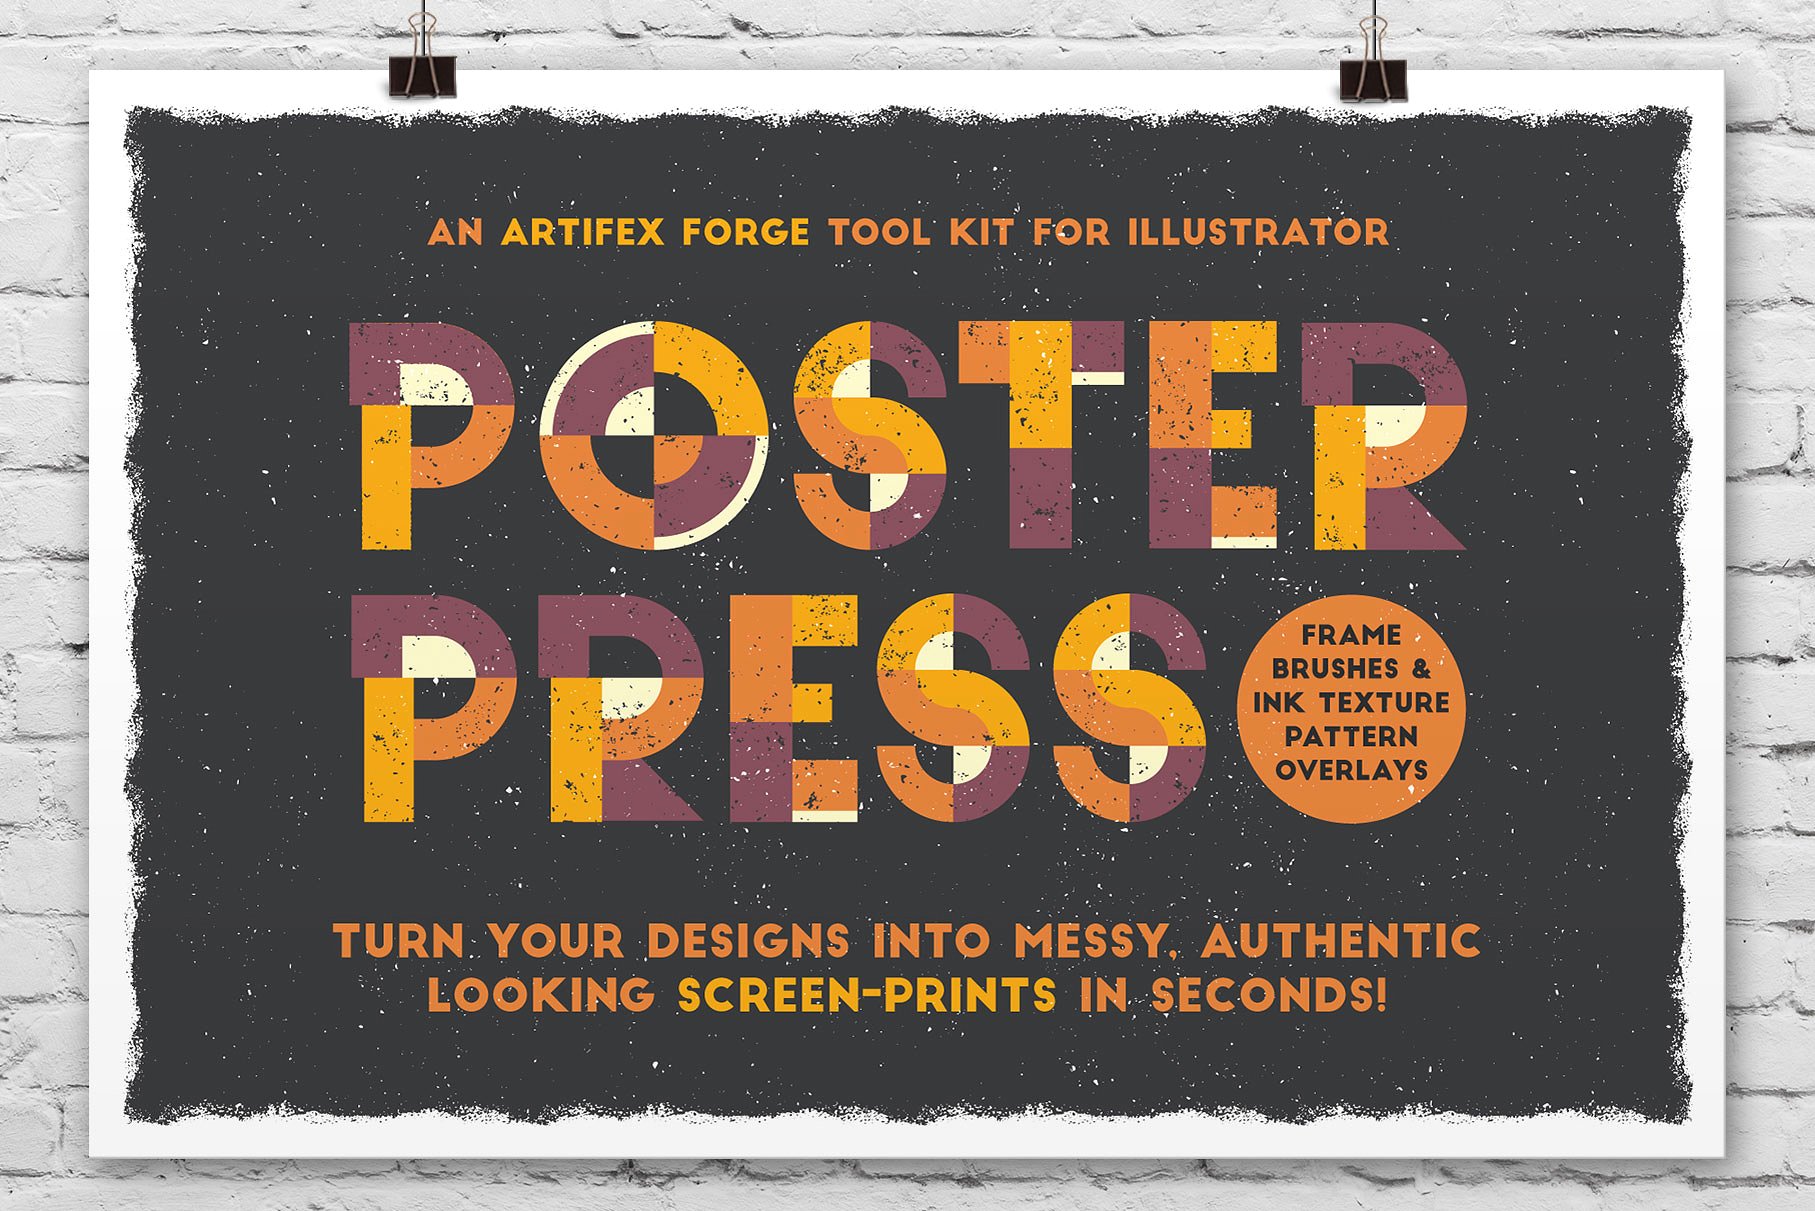 凌乱的墨水纹理和框架矢量素材下载 Poster Press Screen-Print Creator [ai]插图